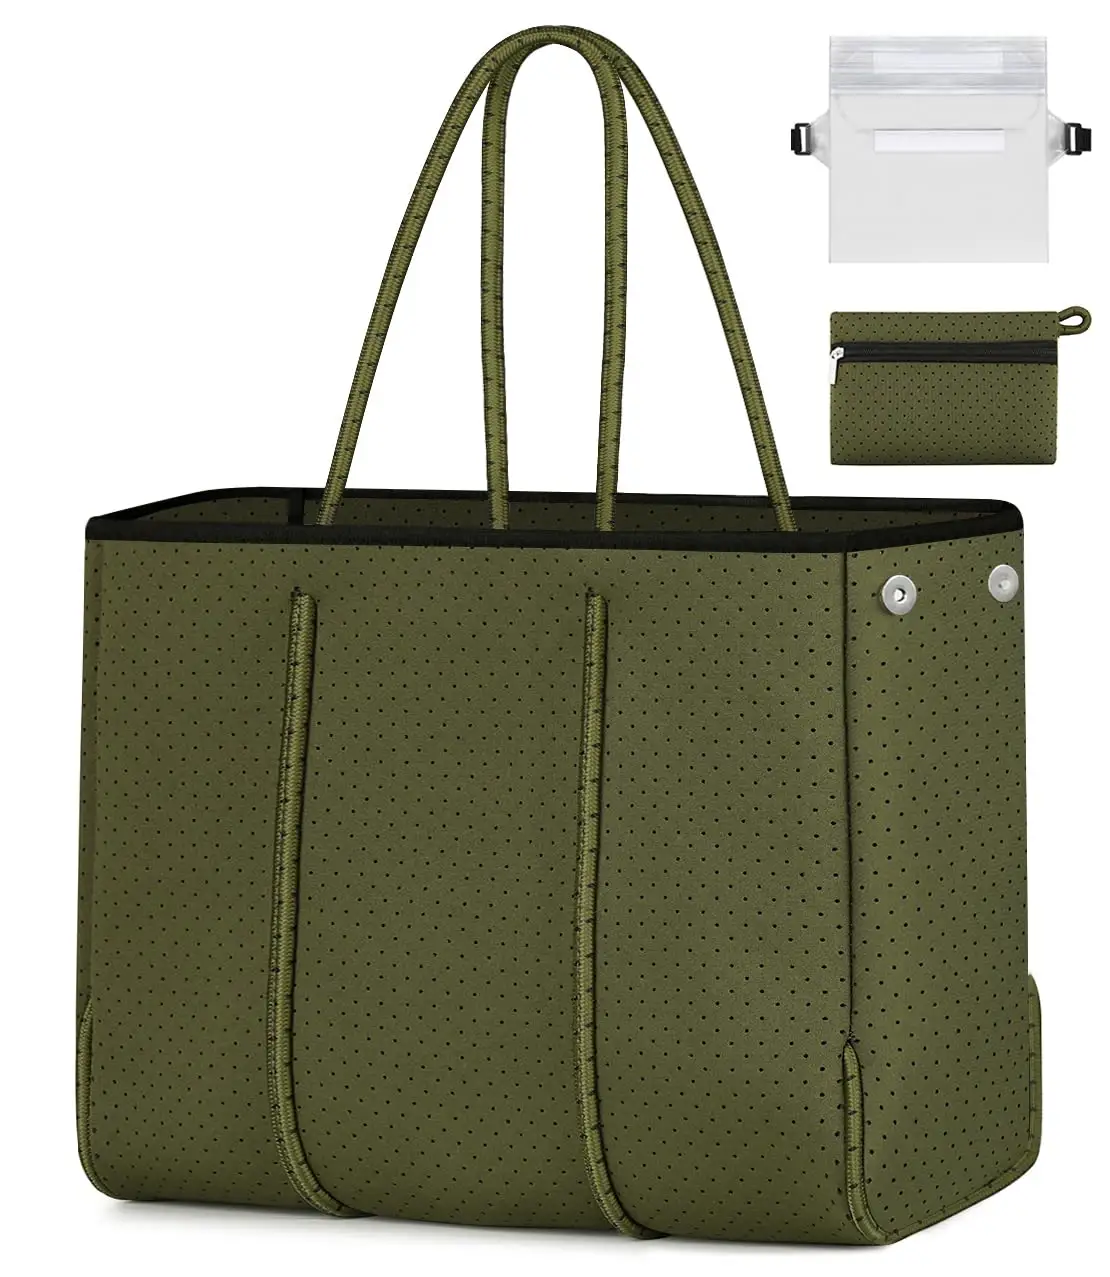 Bolsa de sacola de neoprene personalizada, bolsa grande para praia, piscina, academia, viagem, para mulheres